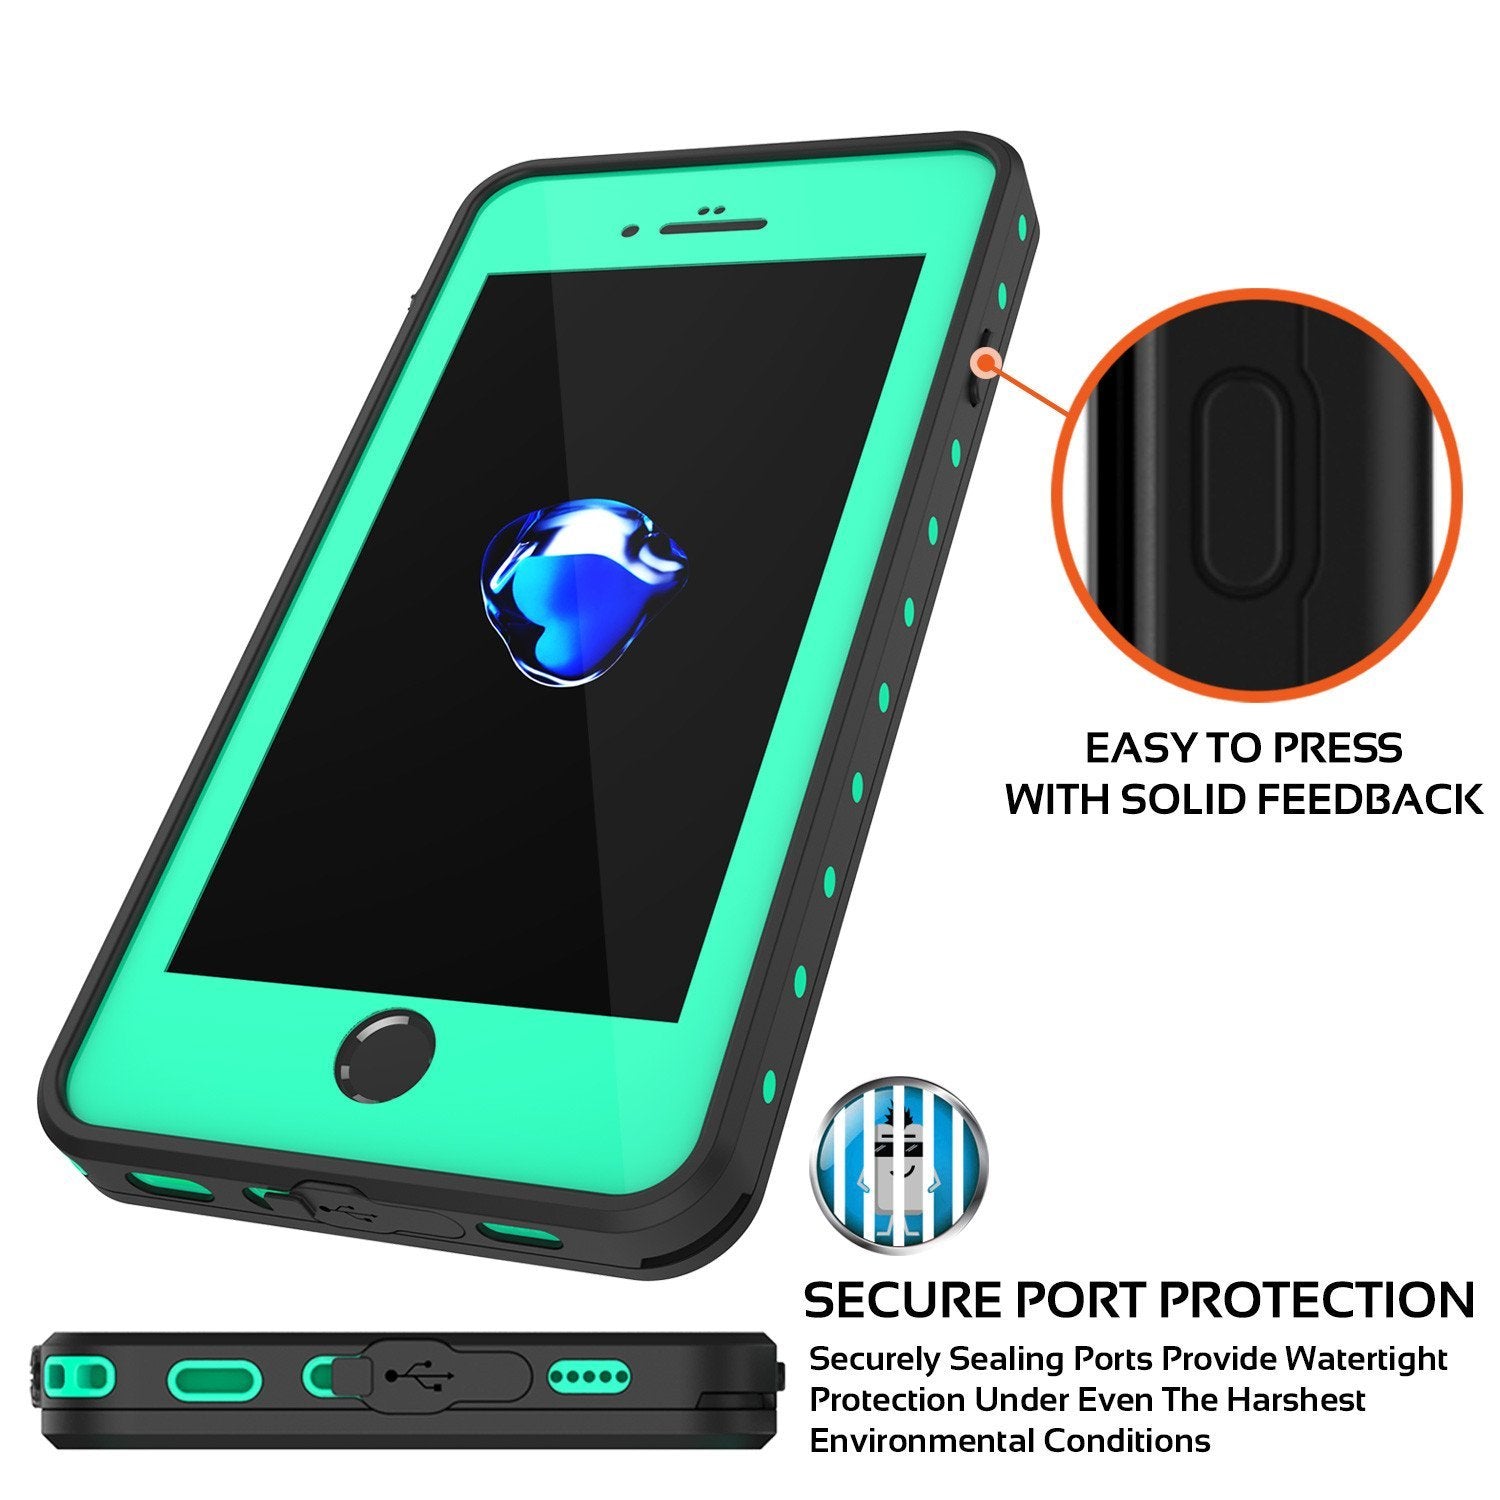 iPhone 8+ Plus Waterproof IP68 Case, Punkcase [Teal] [StudStar Series] [Slim Fit] [Dirtproof]